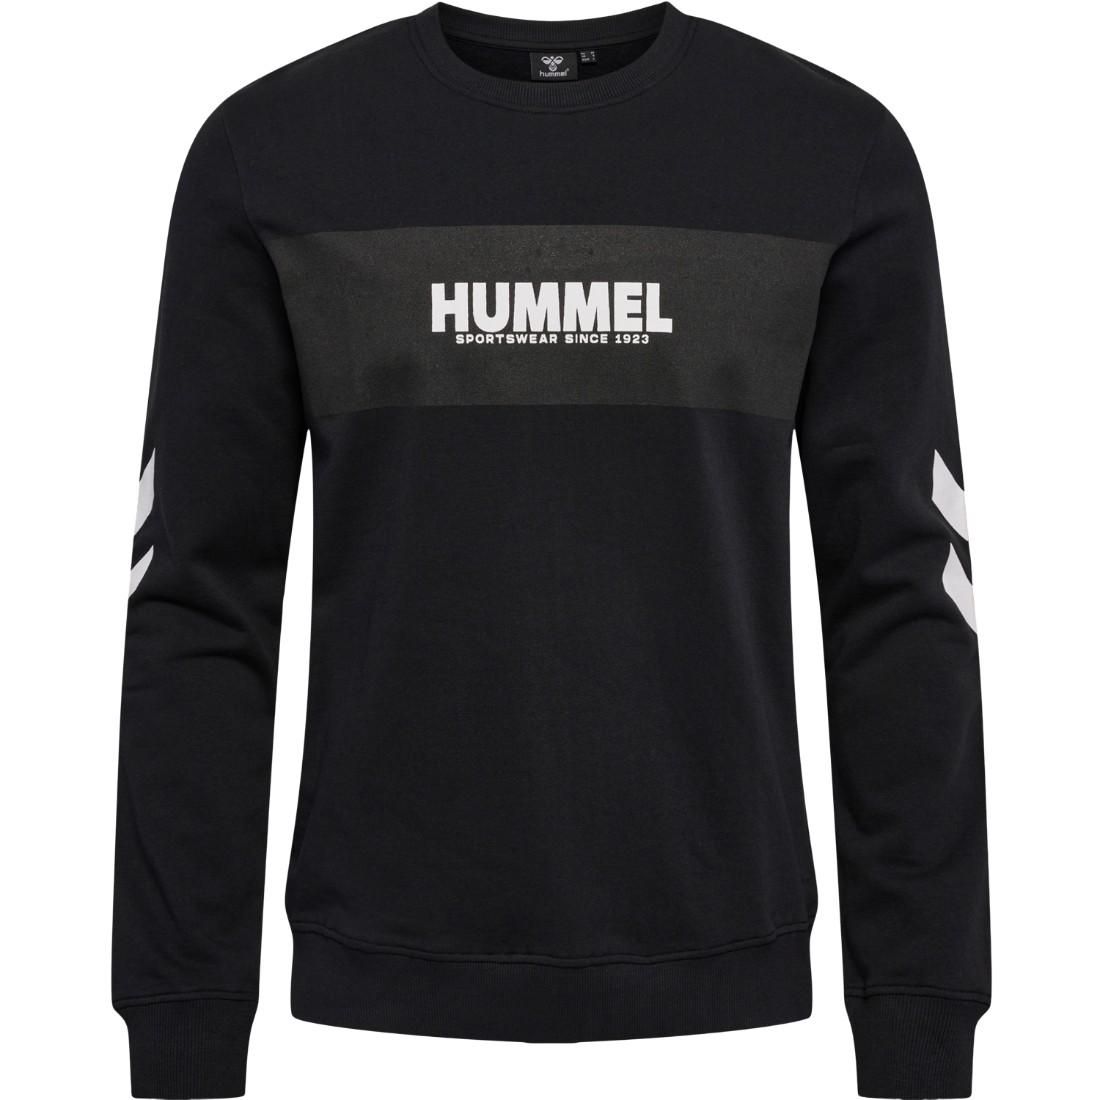 Hummel - 